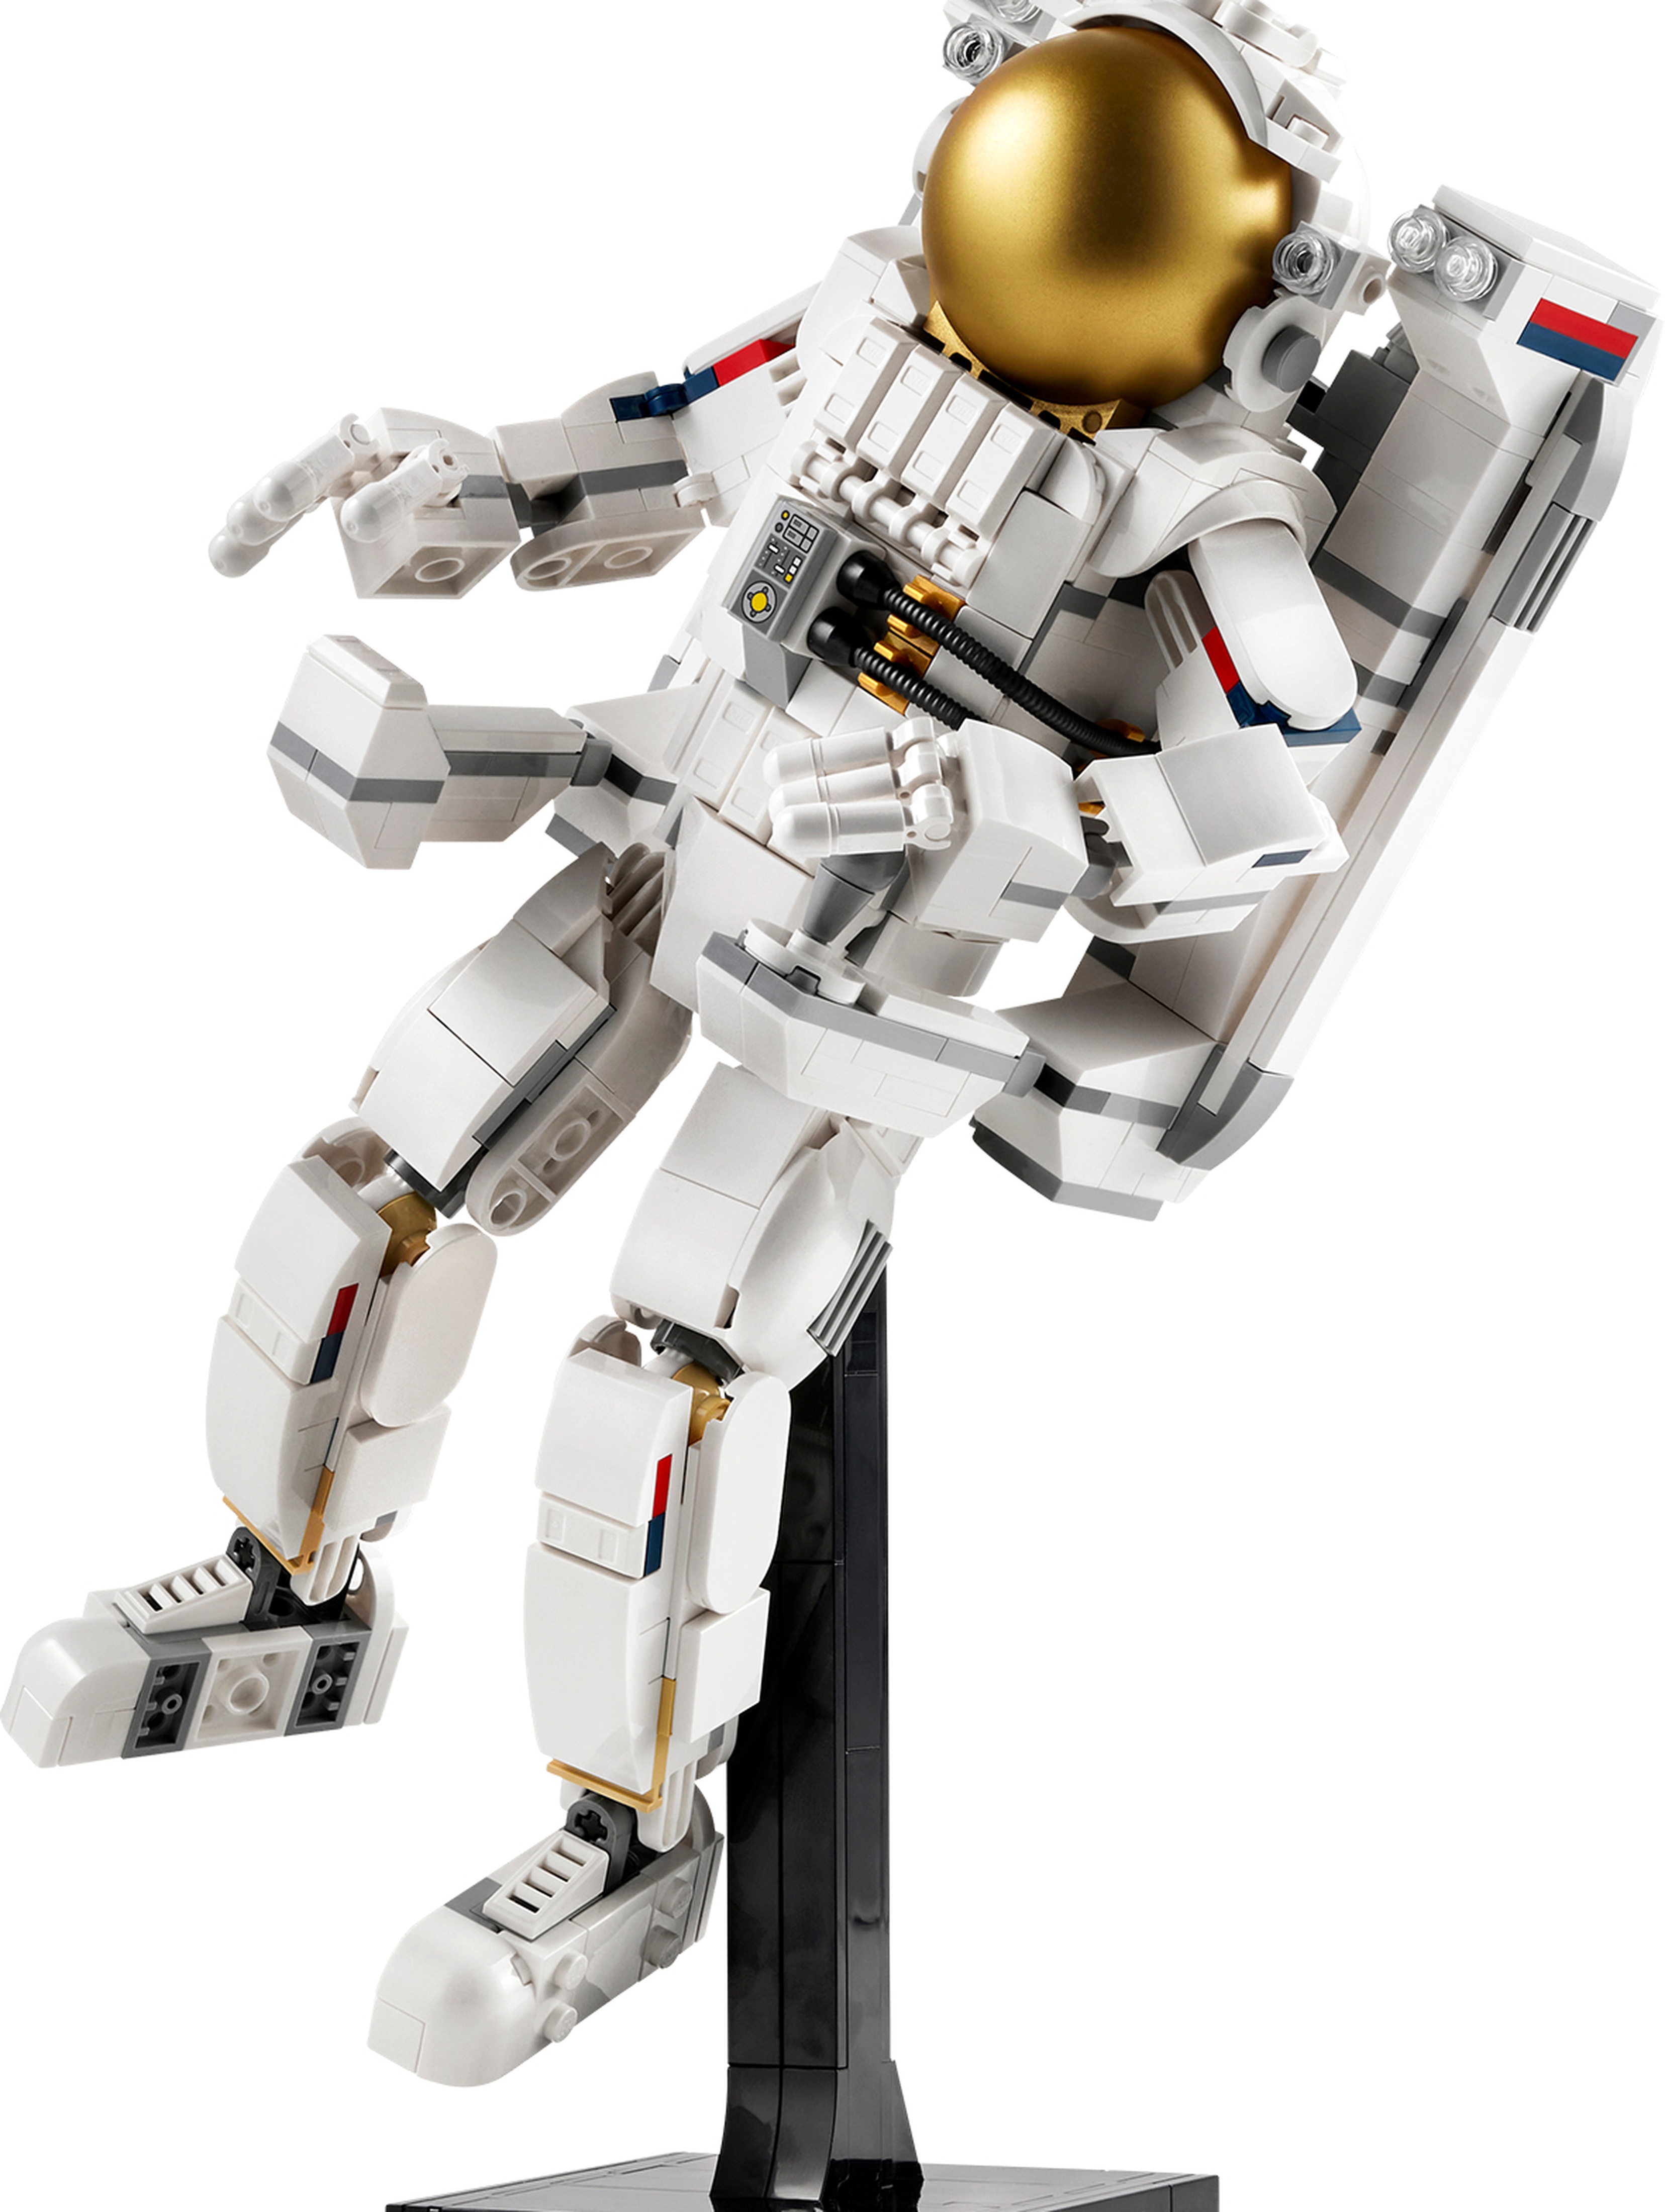 LEGO Klocki Creator 31152 Astronauta